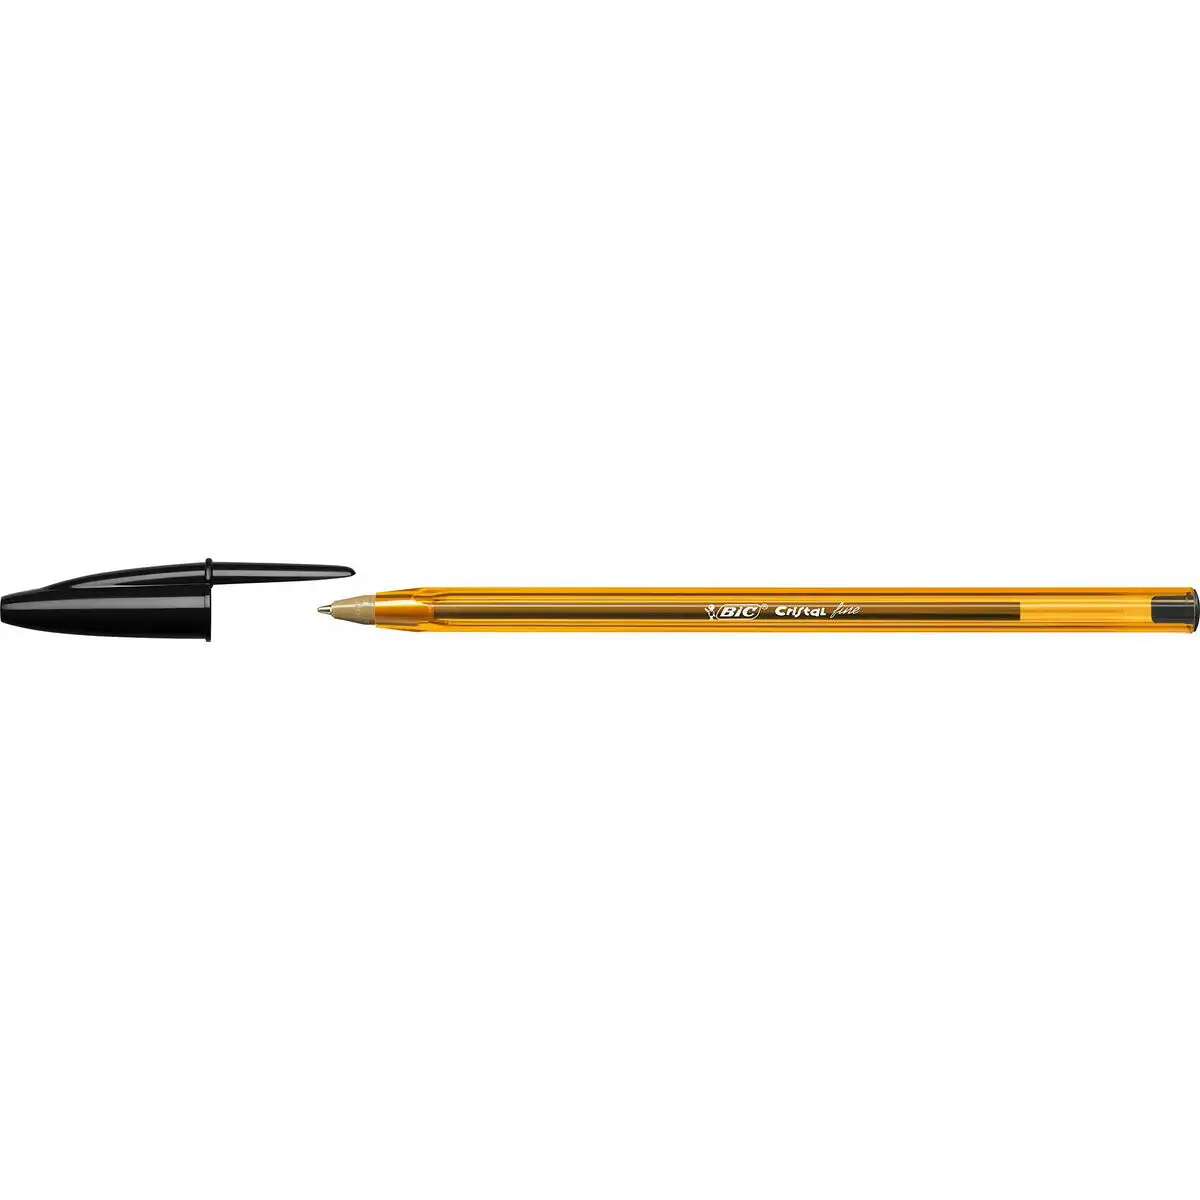 Crayon bic cristal fine noir 0 3 mm 50 unites _4881. Découvrez DIAYTAR SENEGAL - Là où le Choix Rencontre la Qualité. Parcourez notre gamme diversifiée et choisissez parmi des produits conçus pour exceller dans tous les aspects de votre vie.